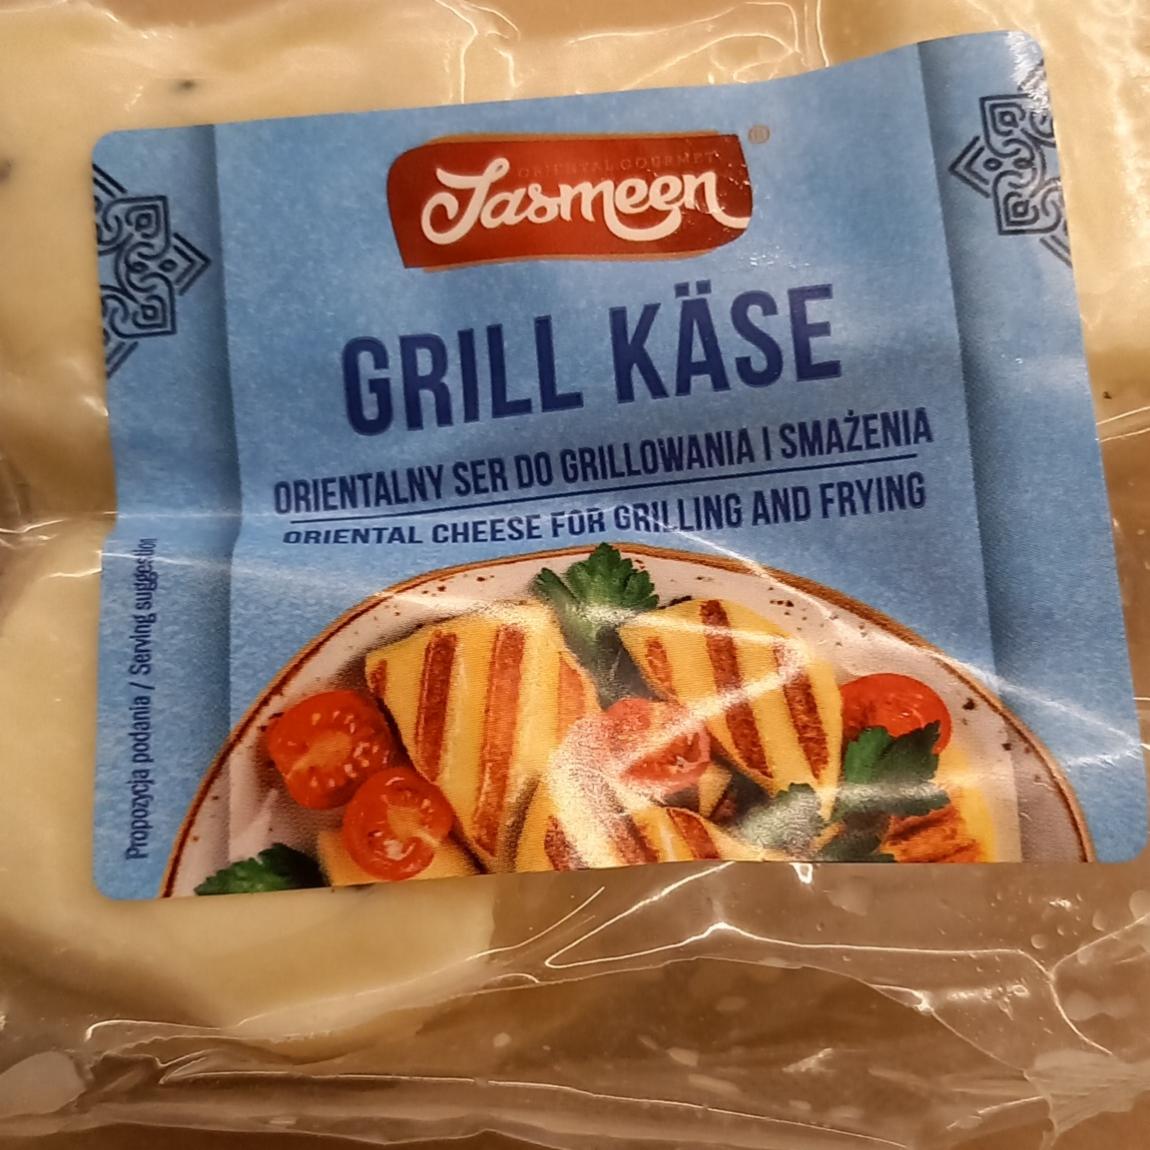 Zdjęcia - Grill käse orientalny ser do grillowania i smażenia Jasmeen